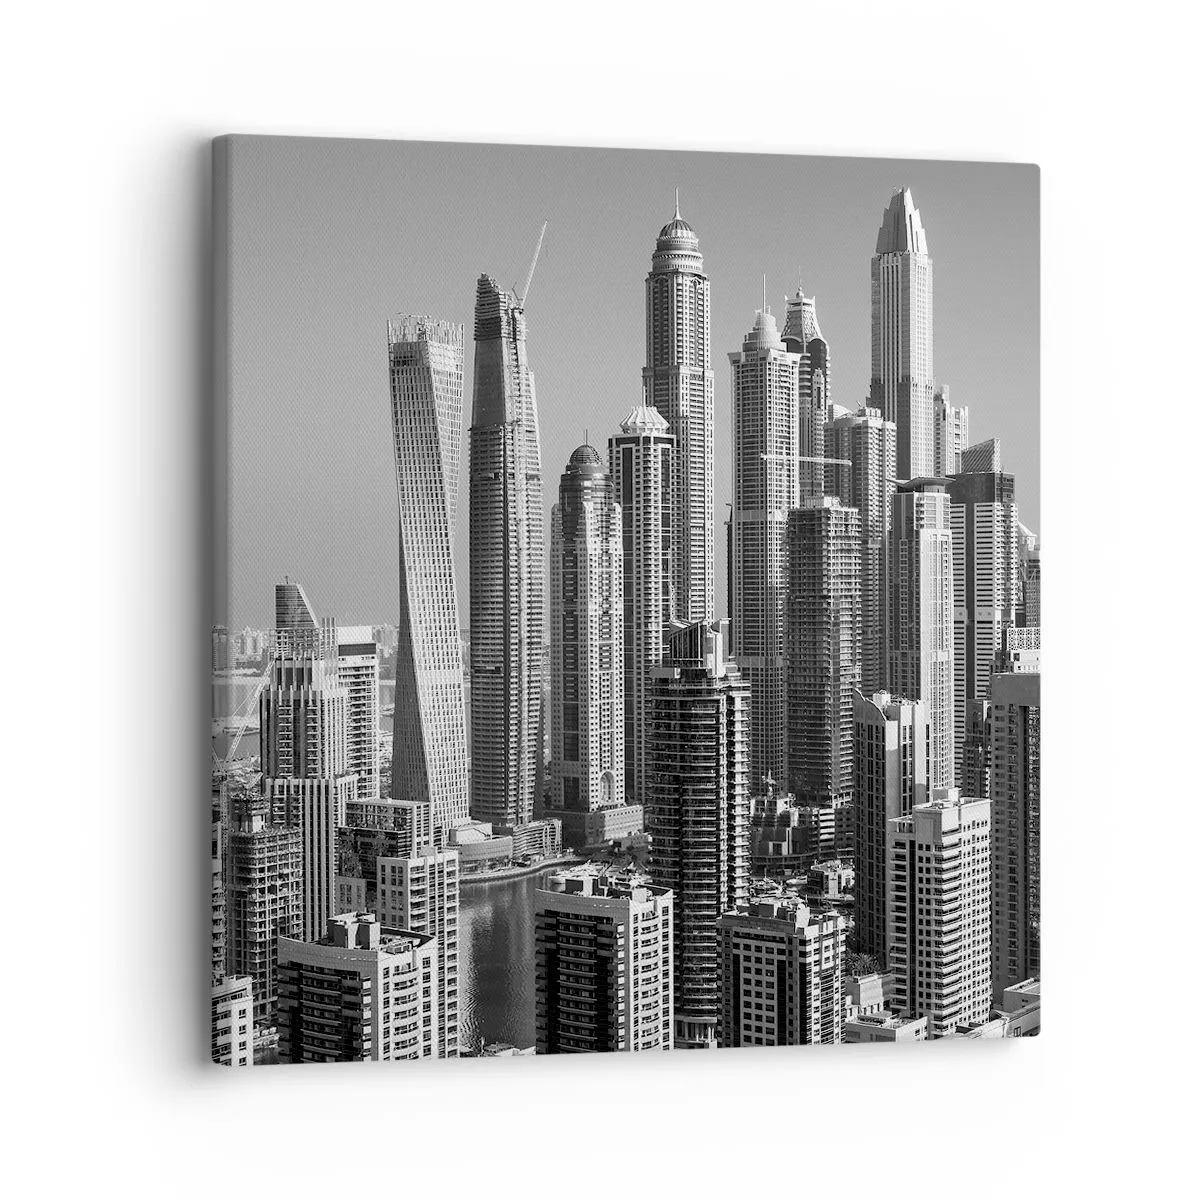 Quadro su tela Arttor 30x30 cm - Grattacieli, Fotografia, Dubai, Moderno, Per il Salotto, Per la Camera da letto, Bianco, Nero, Orizzontali, Tela, AC30x30-4388